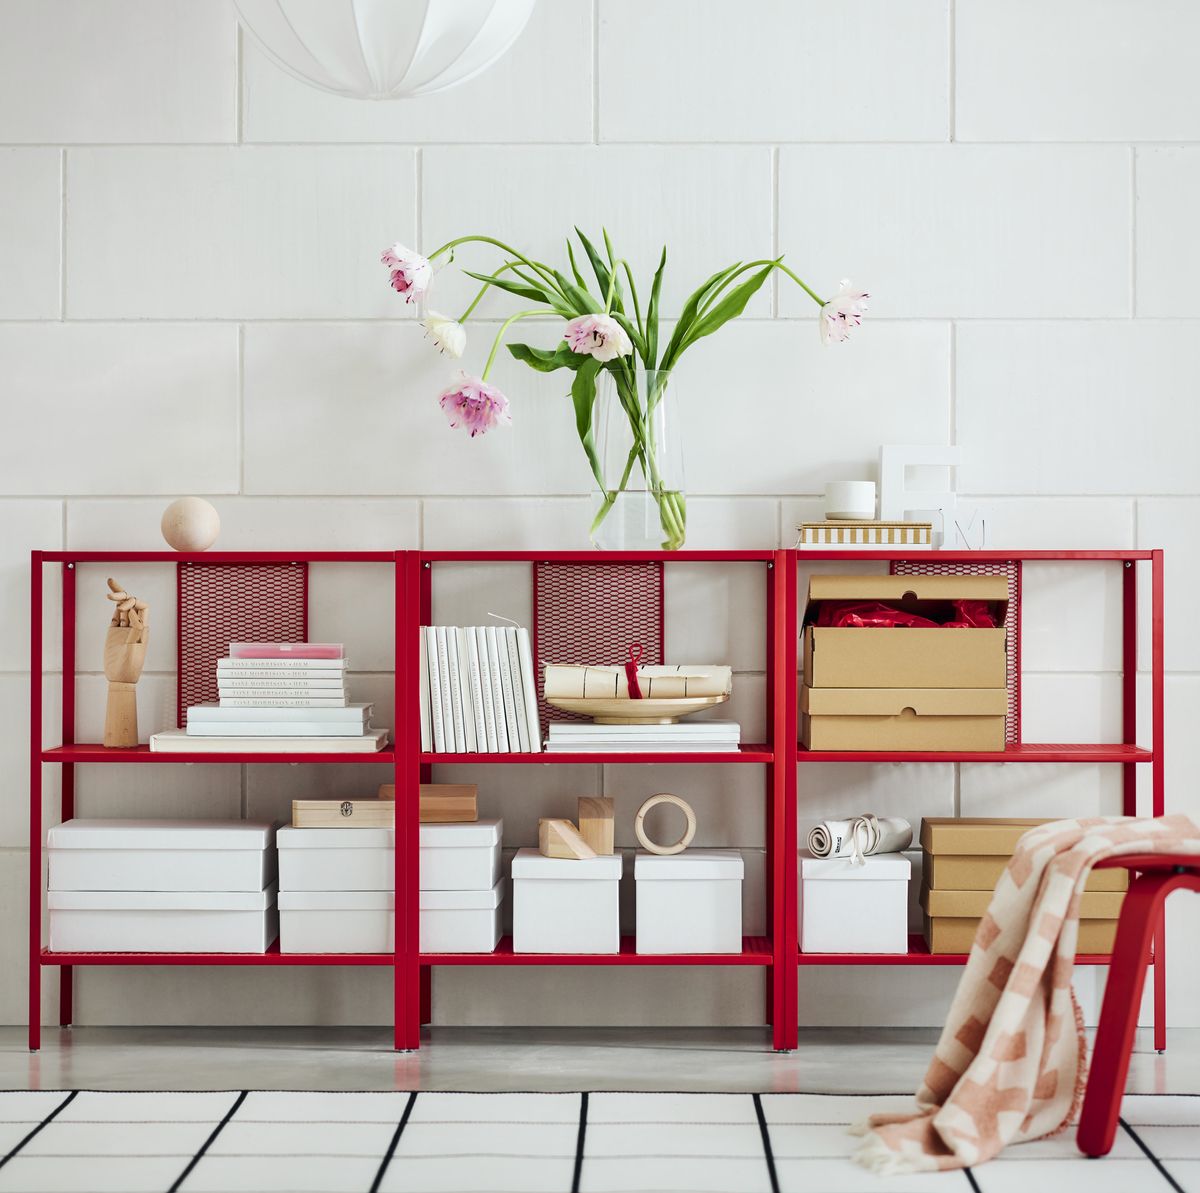 Cajas organizadoras Ikea para ordenar y decorar armarios